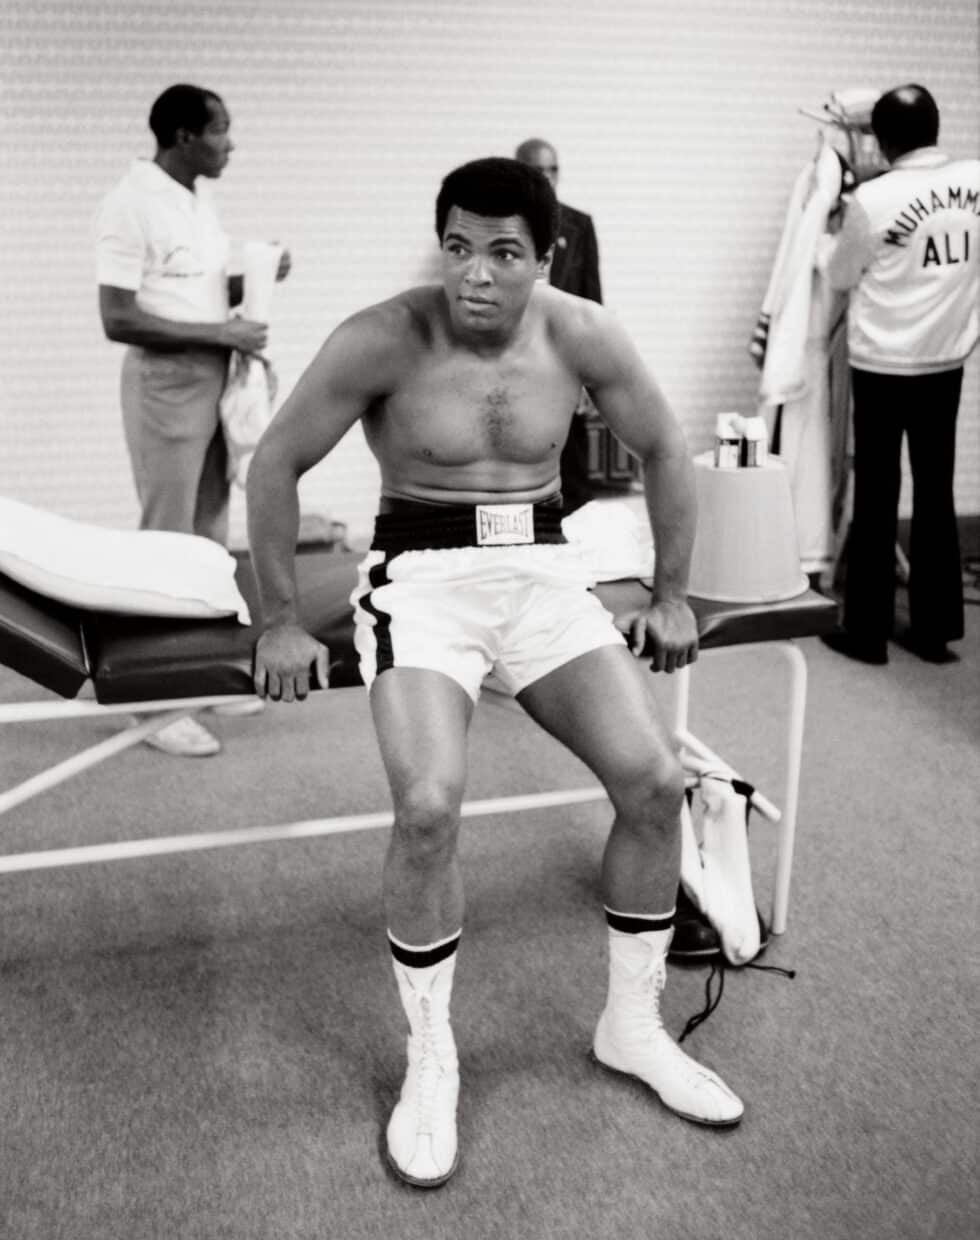 En el vestuario antes del combate. El comportamiento de Ali era relajado y contrastaba con el estado de ánimo sombrío de su equipo. "Vamos a bailar", exclamó Ali según recoge Norman Mailer.